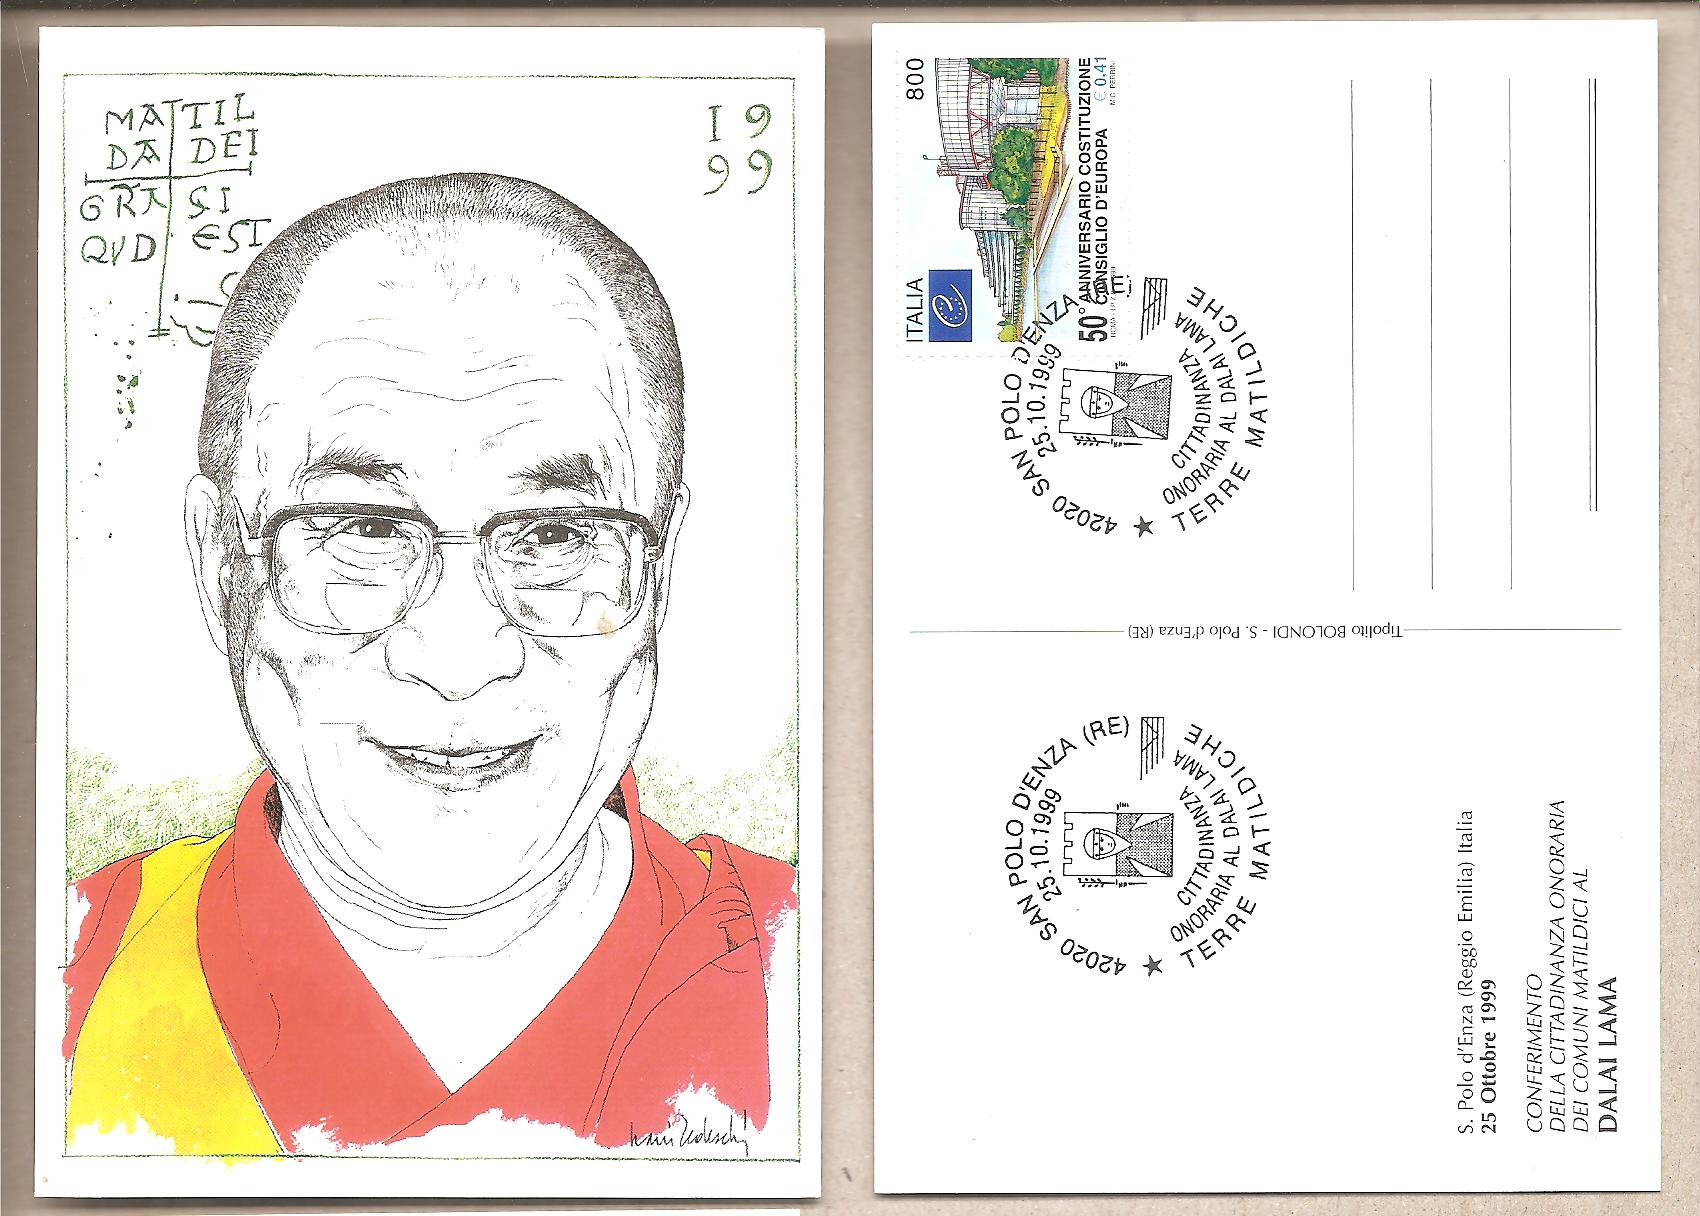 49518 - Italia - cartolina con annullo speciale: Cittadinanza Onoraria al Dalai Lama 1999 * G